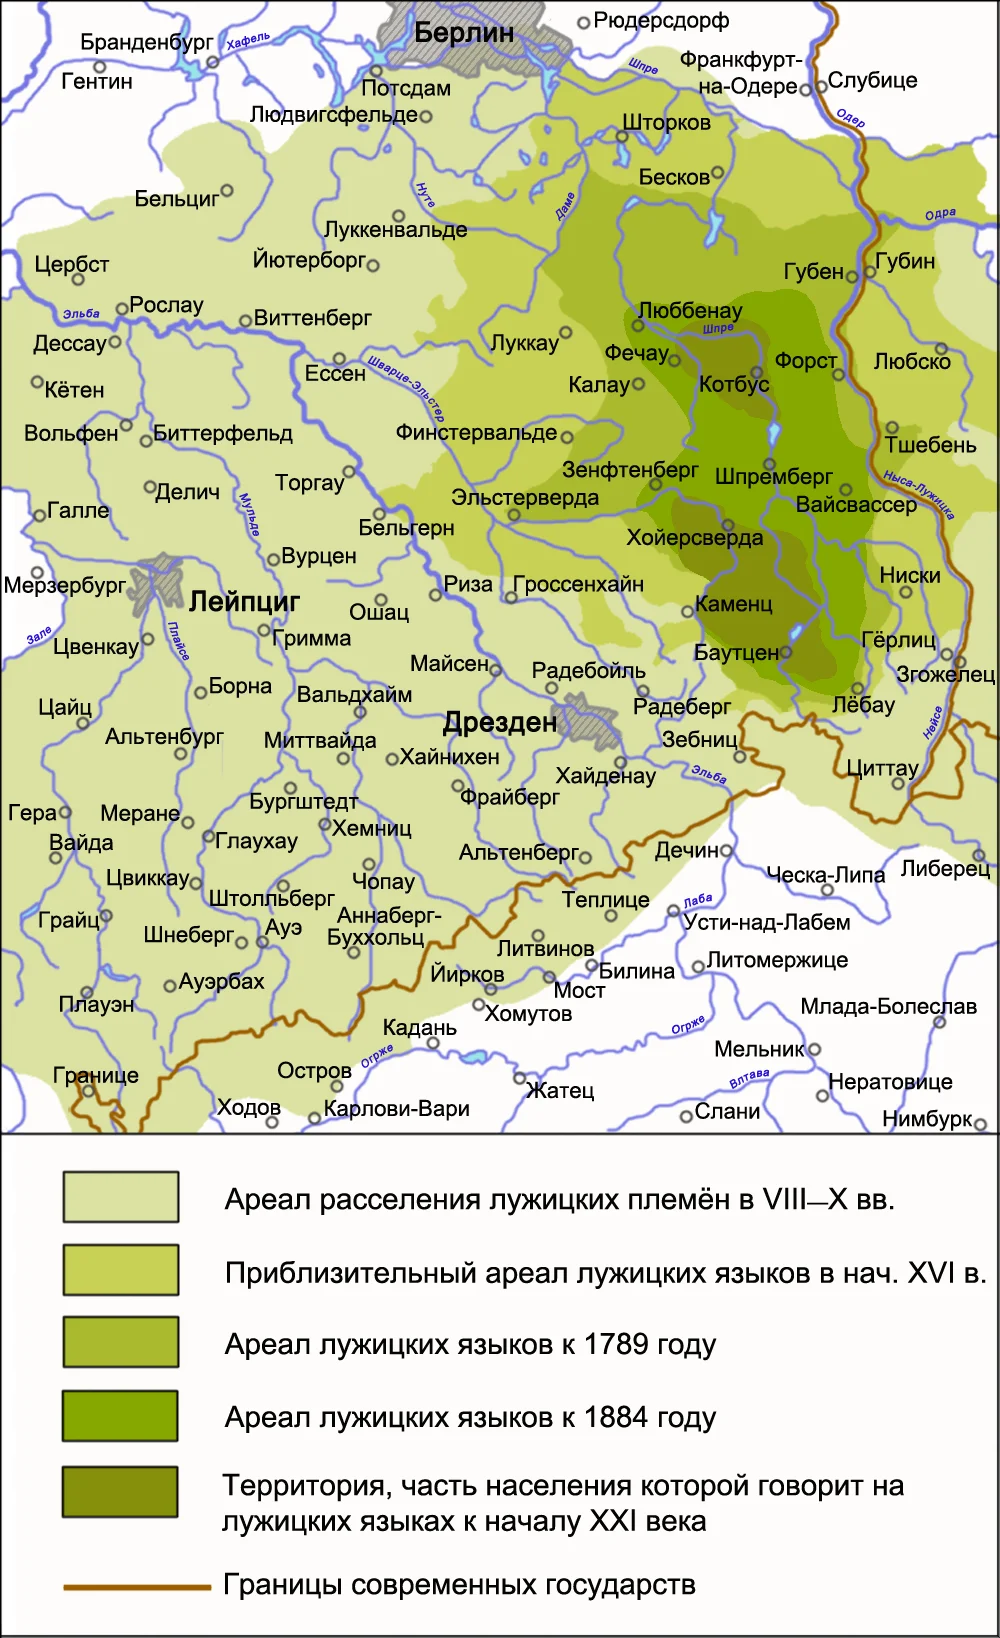 На карте хорошо видно, как немцы  веками вытесняли славян. Сегодня бывшая территория славян (выделена желто-салатовым цветом), – полностью Германия.